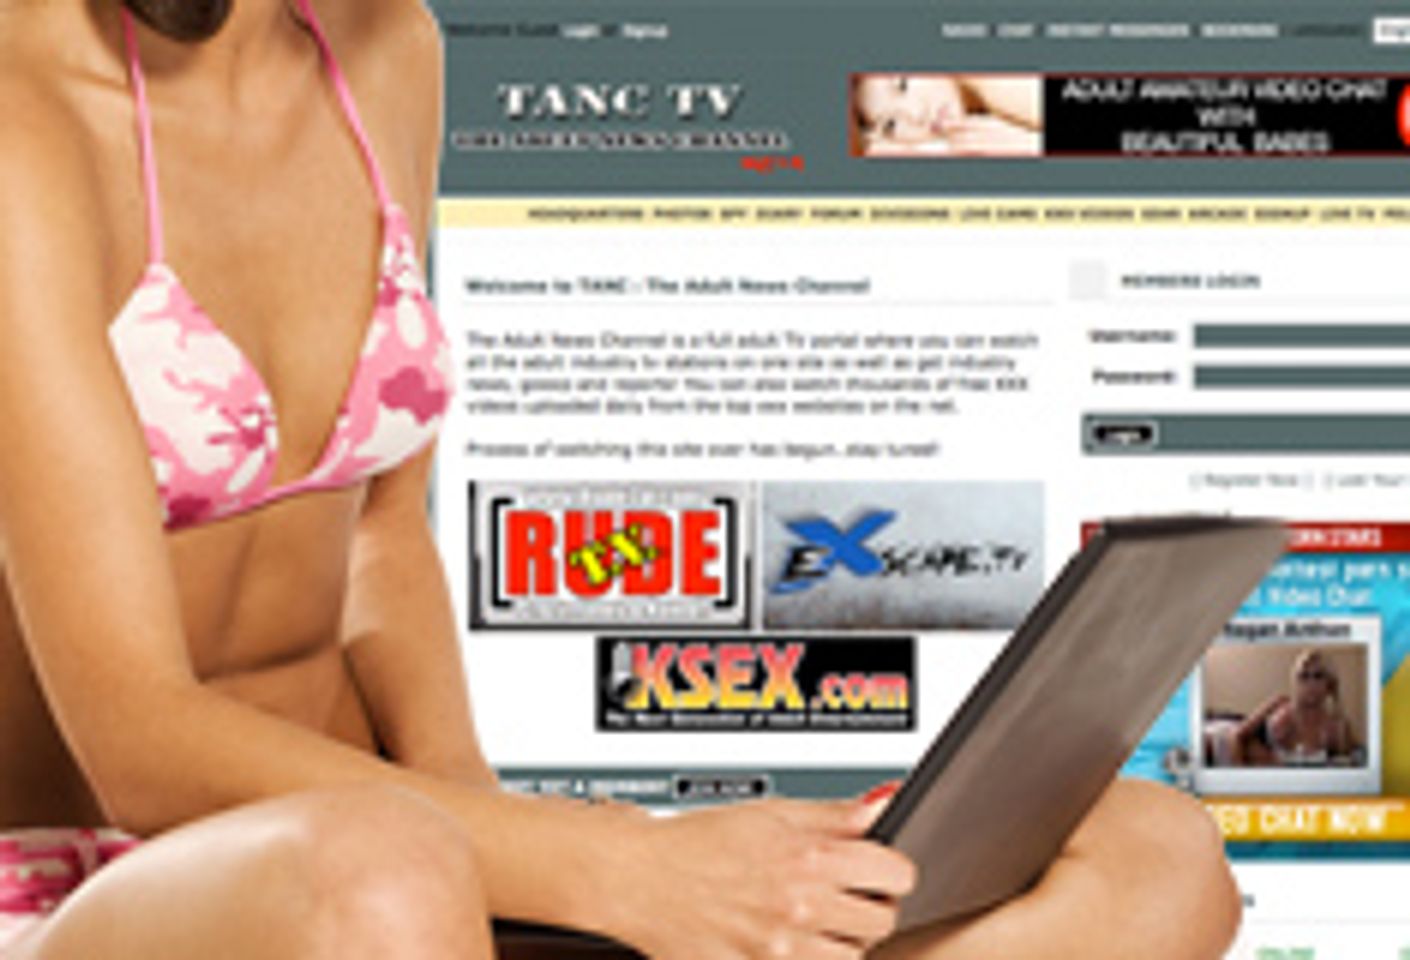 TANC TV Becomes Adult TV Portal